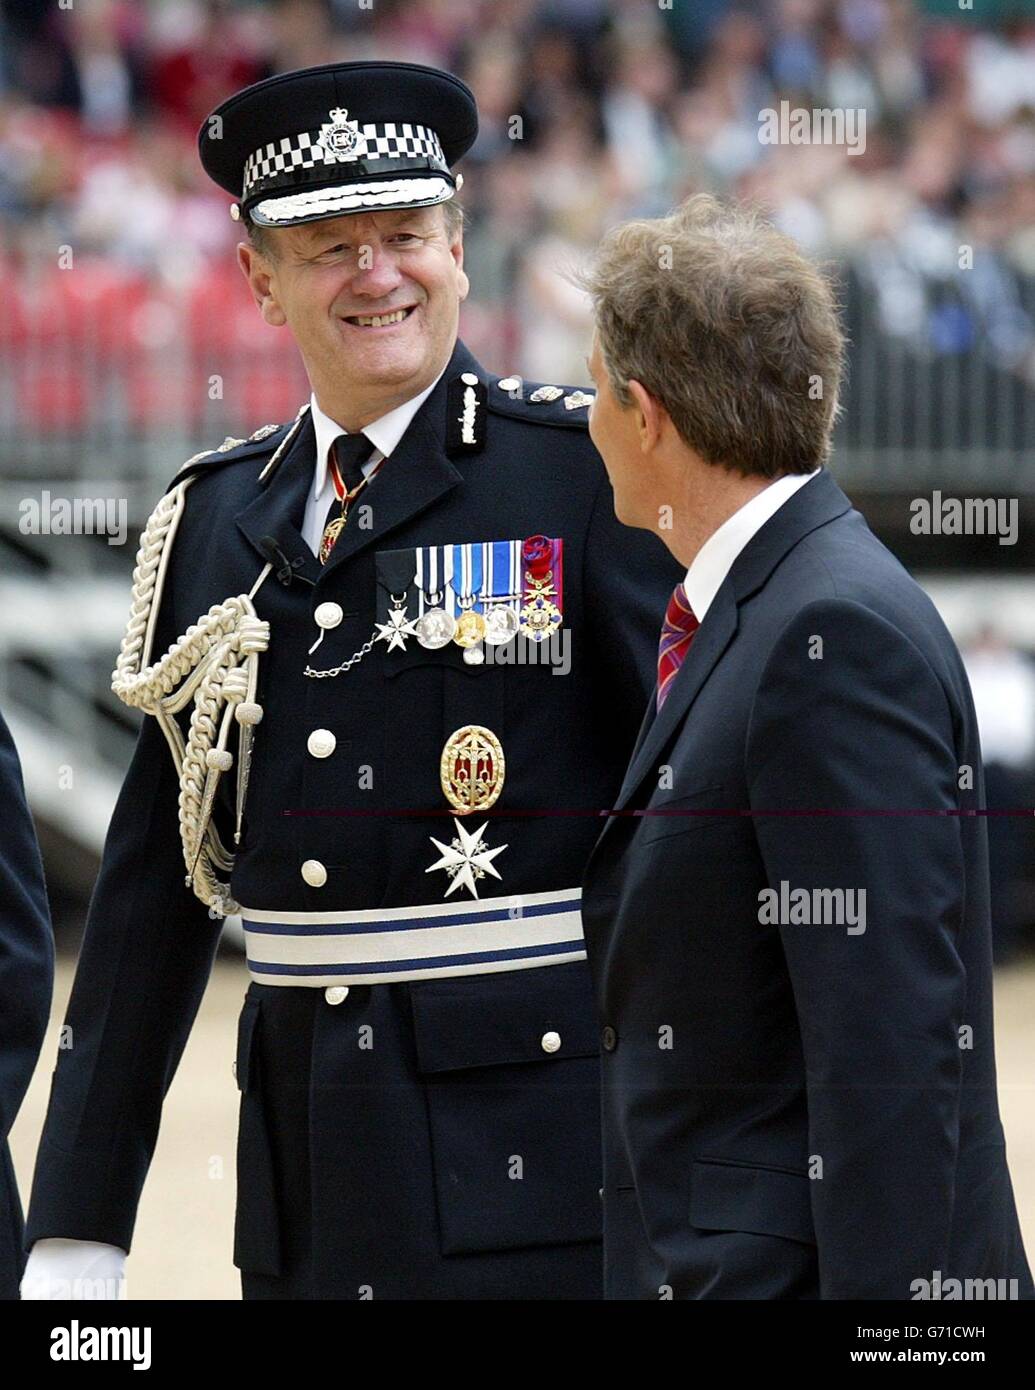 Il commissario della polizia Sir John Stevens (a sinistra) parla con il primo ministro britannico Tony Blair dopo aver riesaminato i suoi ufficiali in occasione di una celebrazione del 175° anniversario del Metropolitan Police Service alla Horse Guards Parade. Foto Stock